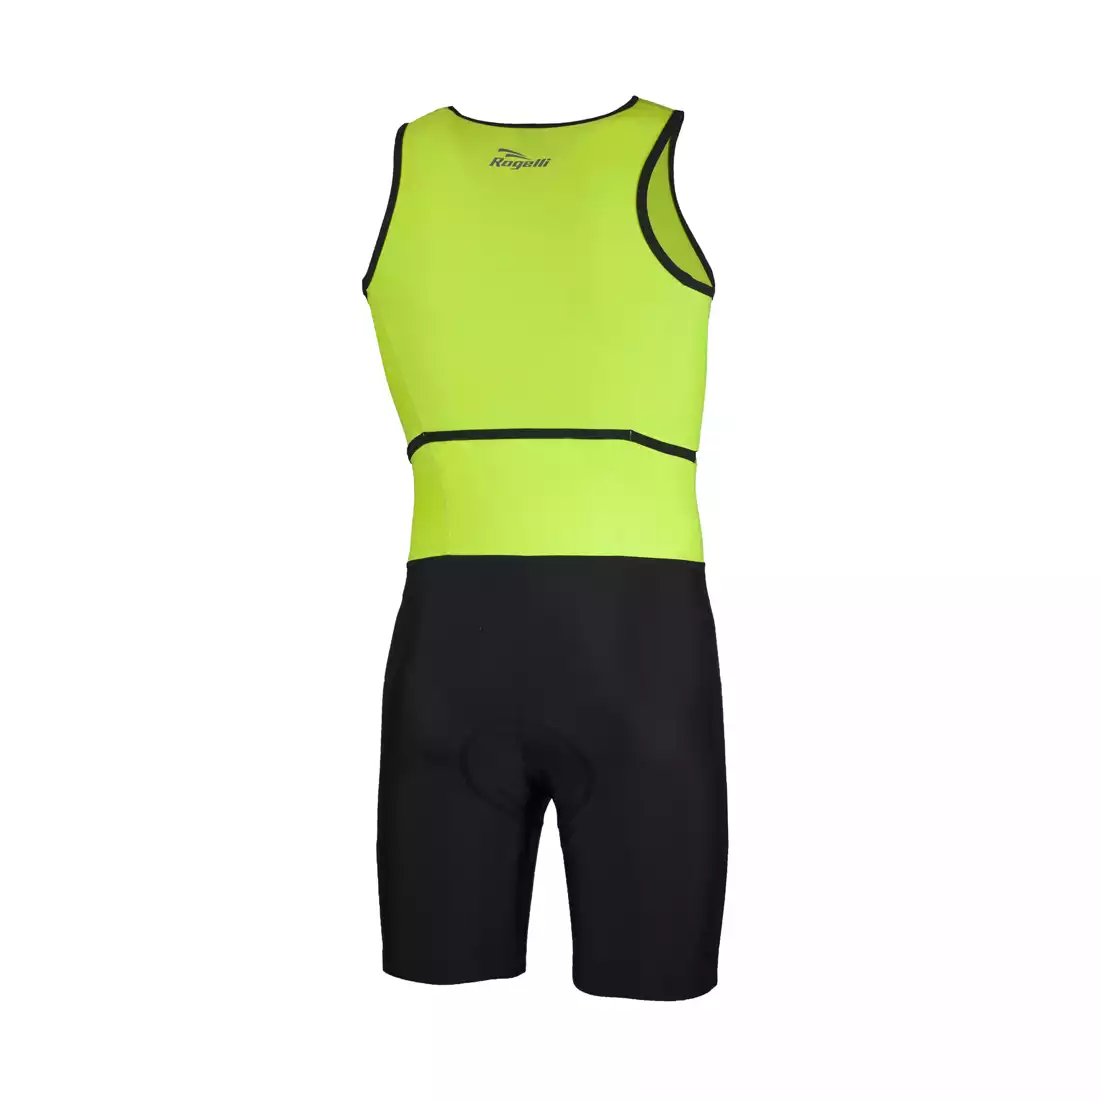 ROGELLI TRI FLORIDA 030.004 męski strój triathlonowy, fluorowo-czarny